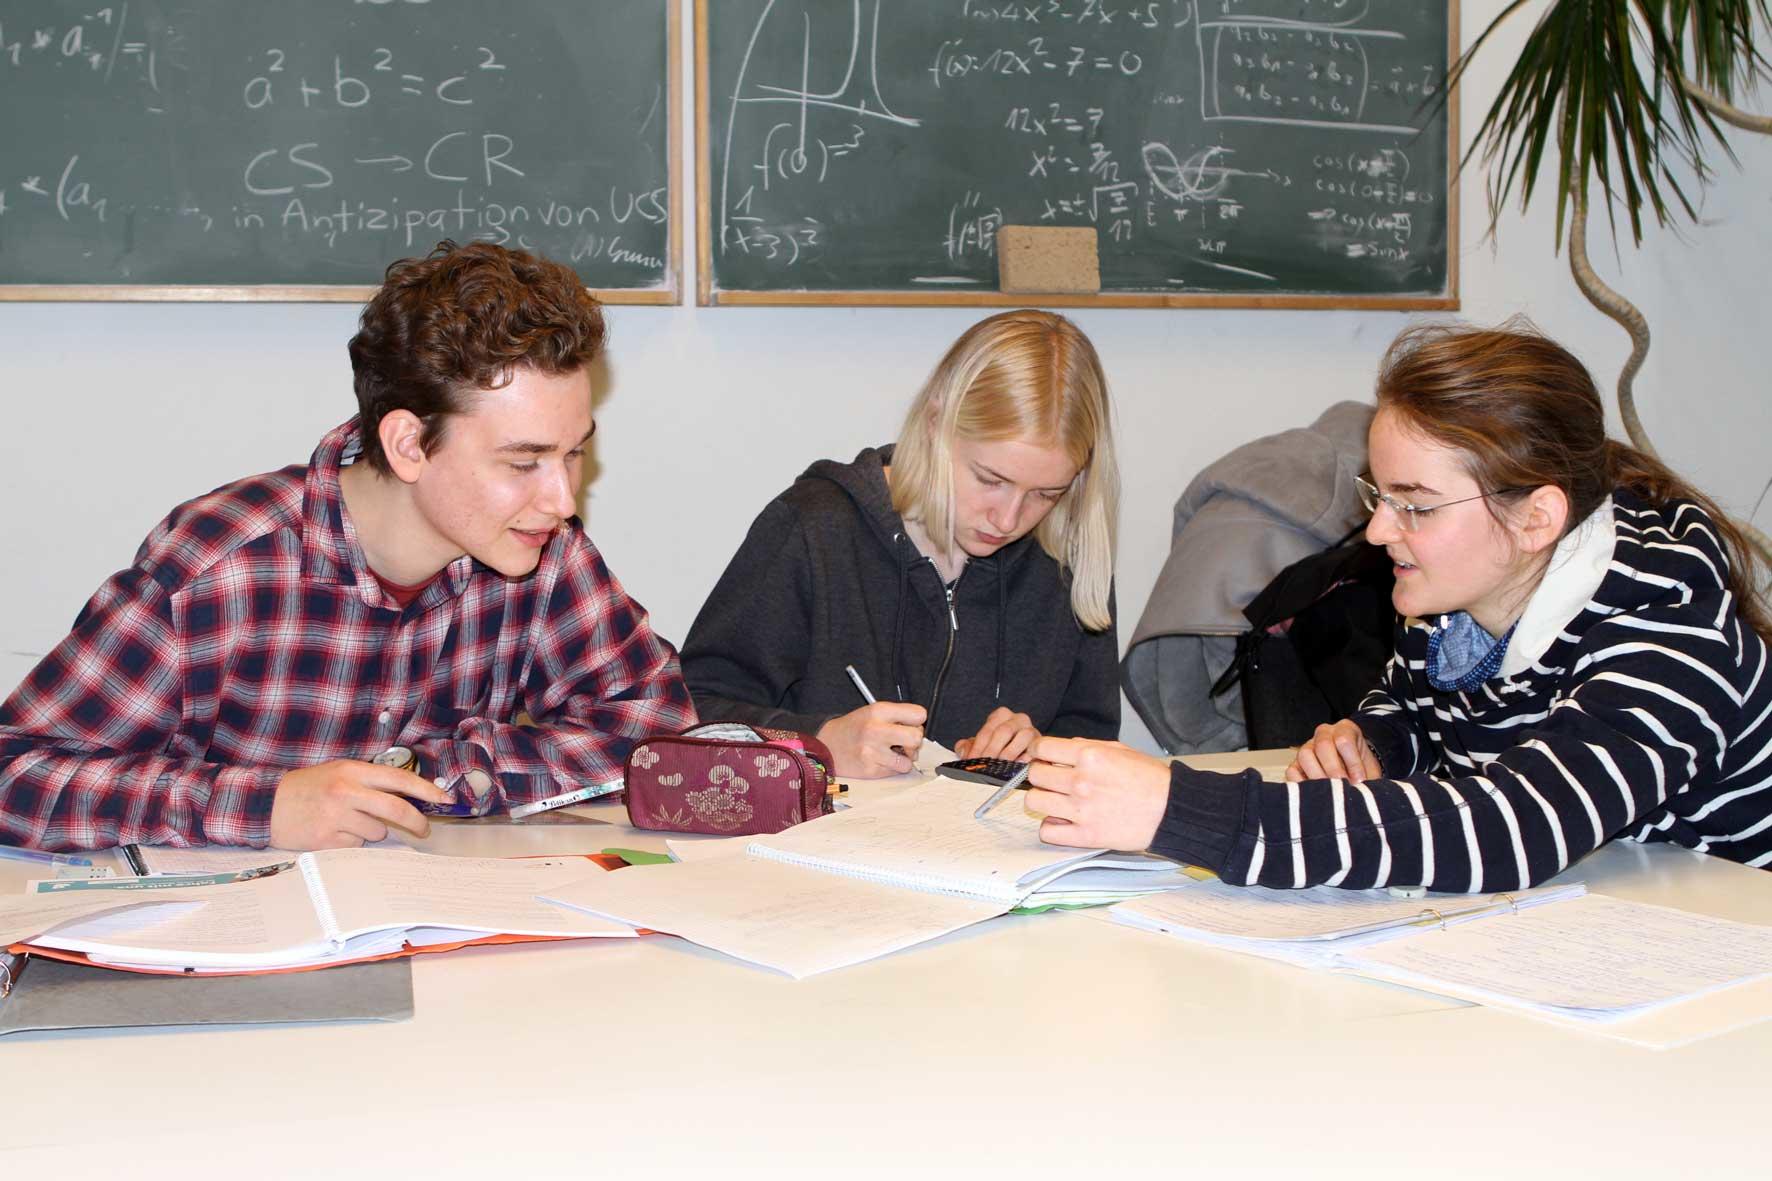 Studierende lösen Rechenaufgaben in kleinen Gruppen
Quelle: Olga Jarugski